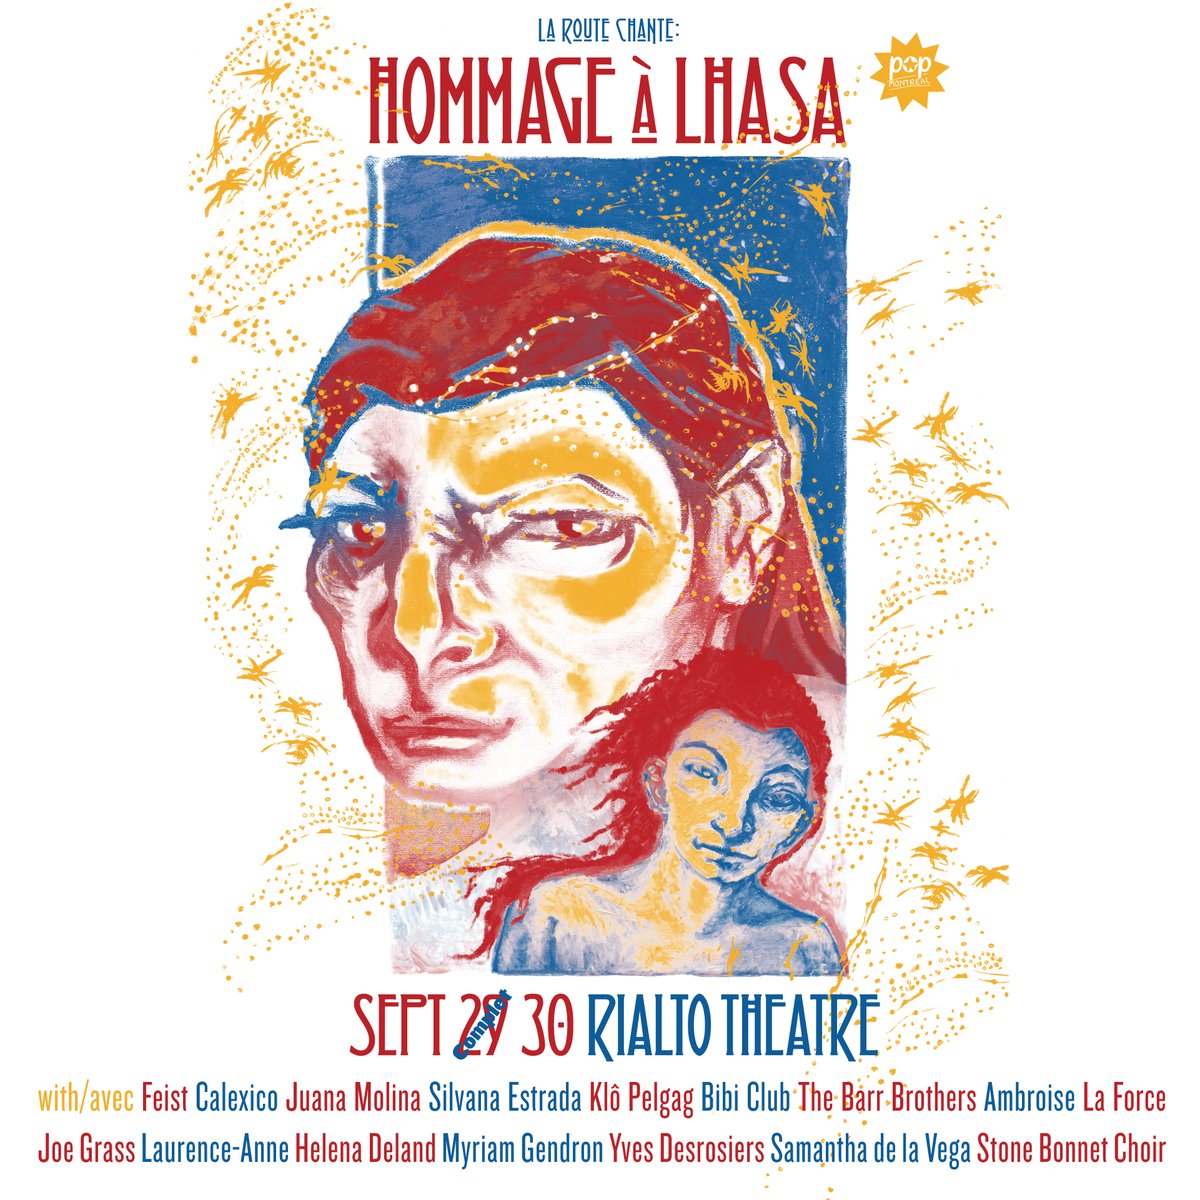 Puisque la première date est complète, nous avons ajouté une nouvelle date, le 30 septembre au Théâtre Rialto, pour assister à notre concert hommage à Lhasa de Sala, 'La route chante'. ⇢ popmontreal.com/events/la-rout…